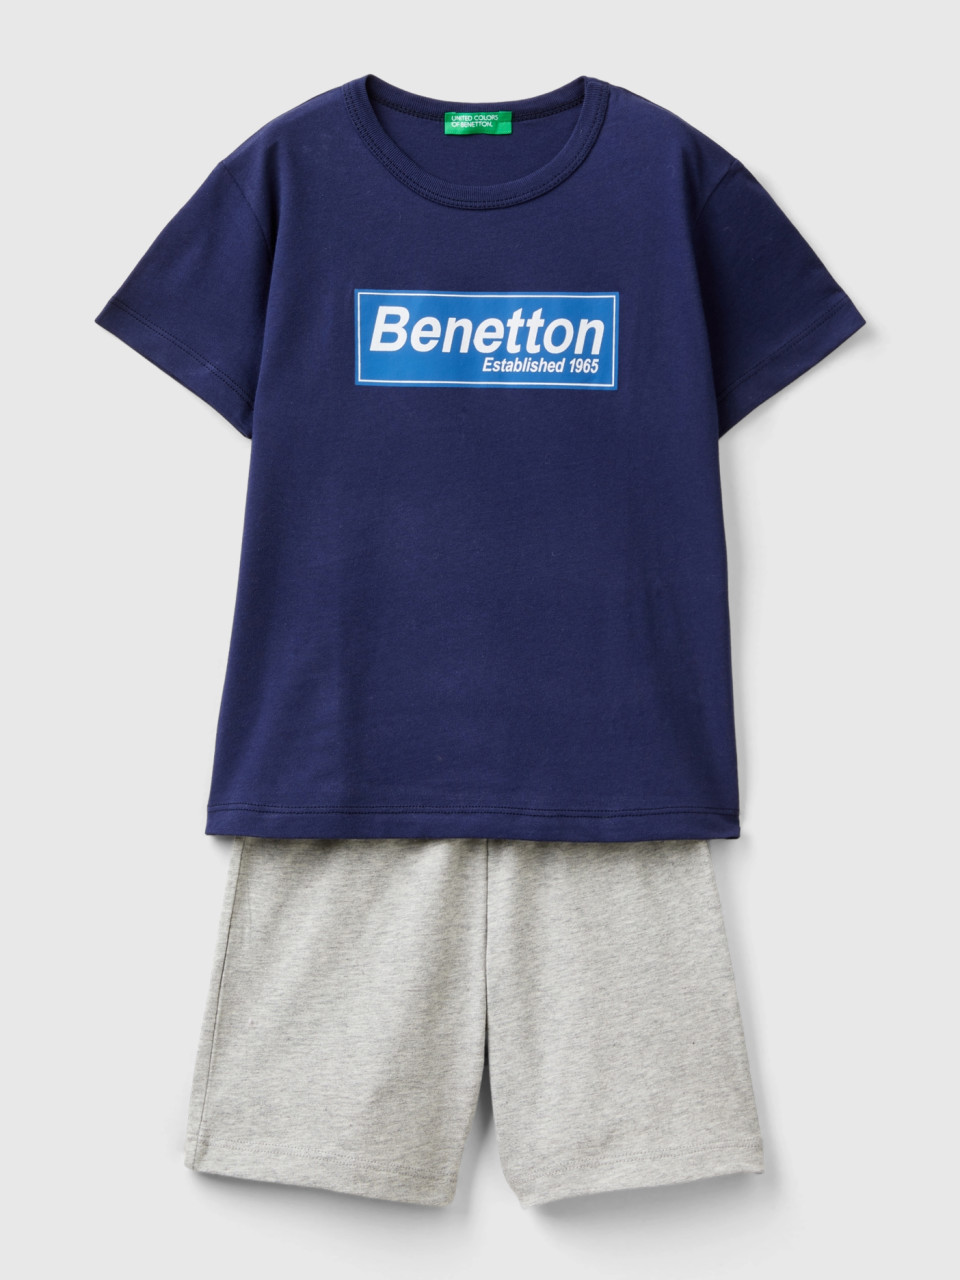 Benetton, Completo T-shirt E Bermuda 100% Cotone, Blu Scuro, Bambini